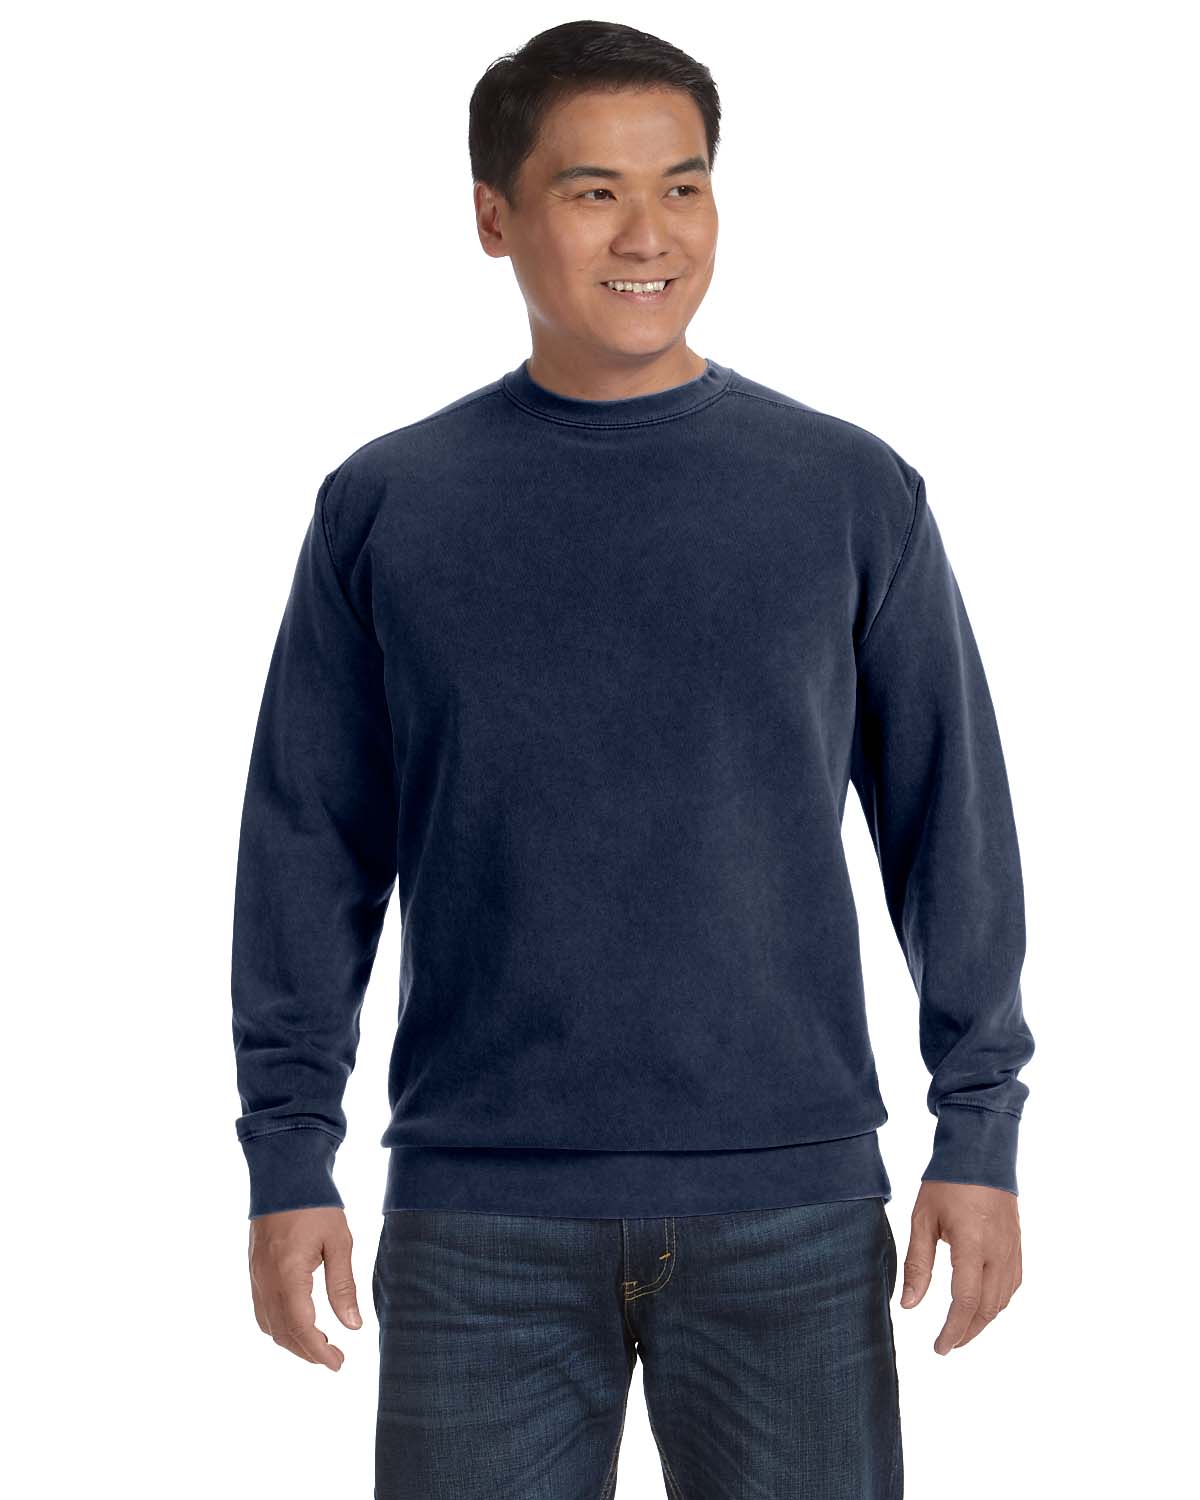 Comfort Crew Neck Sweatshirt